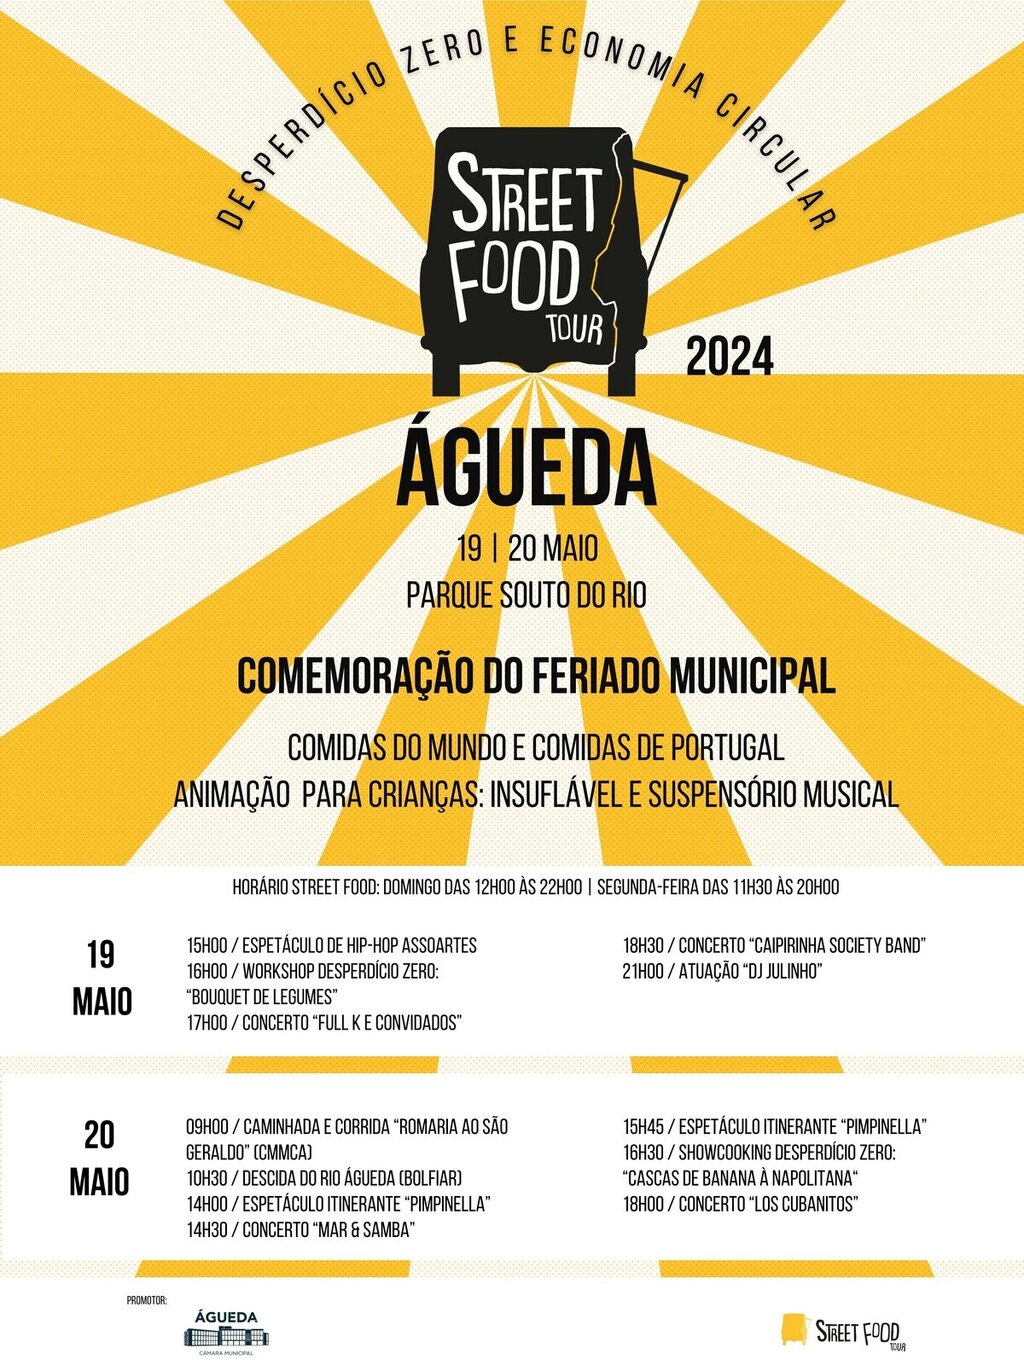 Águeda assinala Feriado Municipal dias 19 e 20 de maio no Souto do Rio